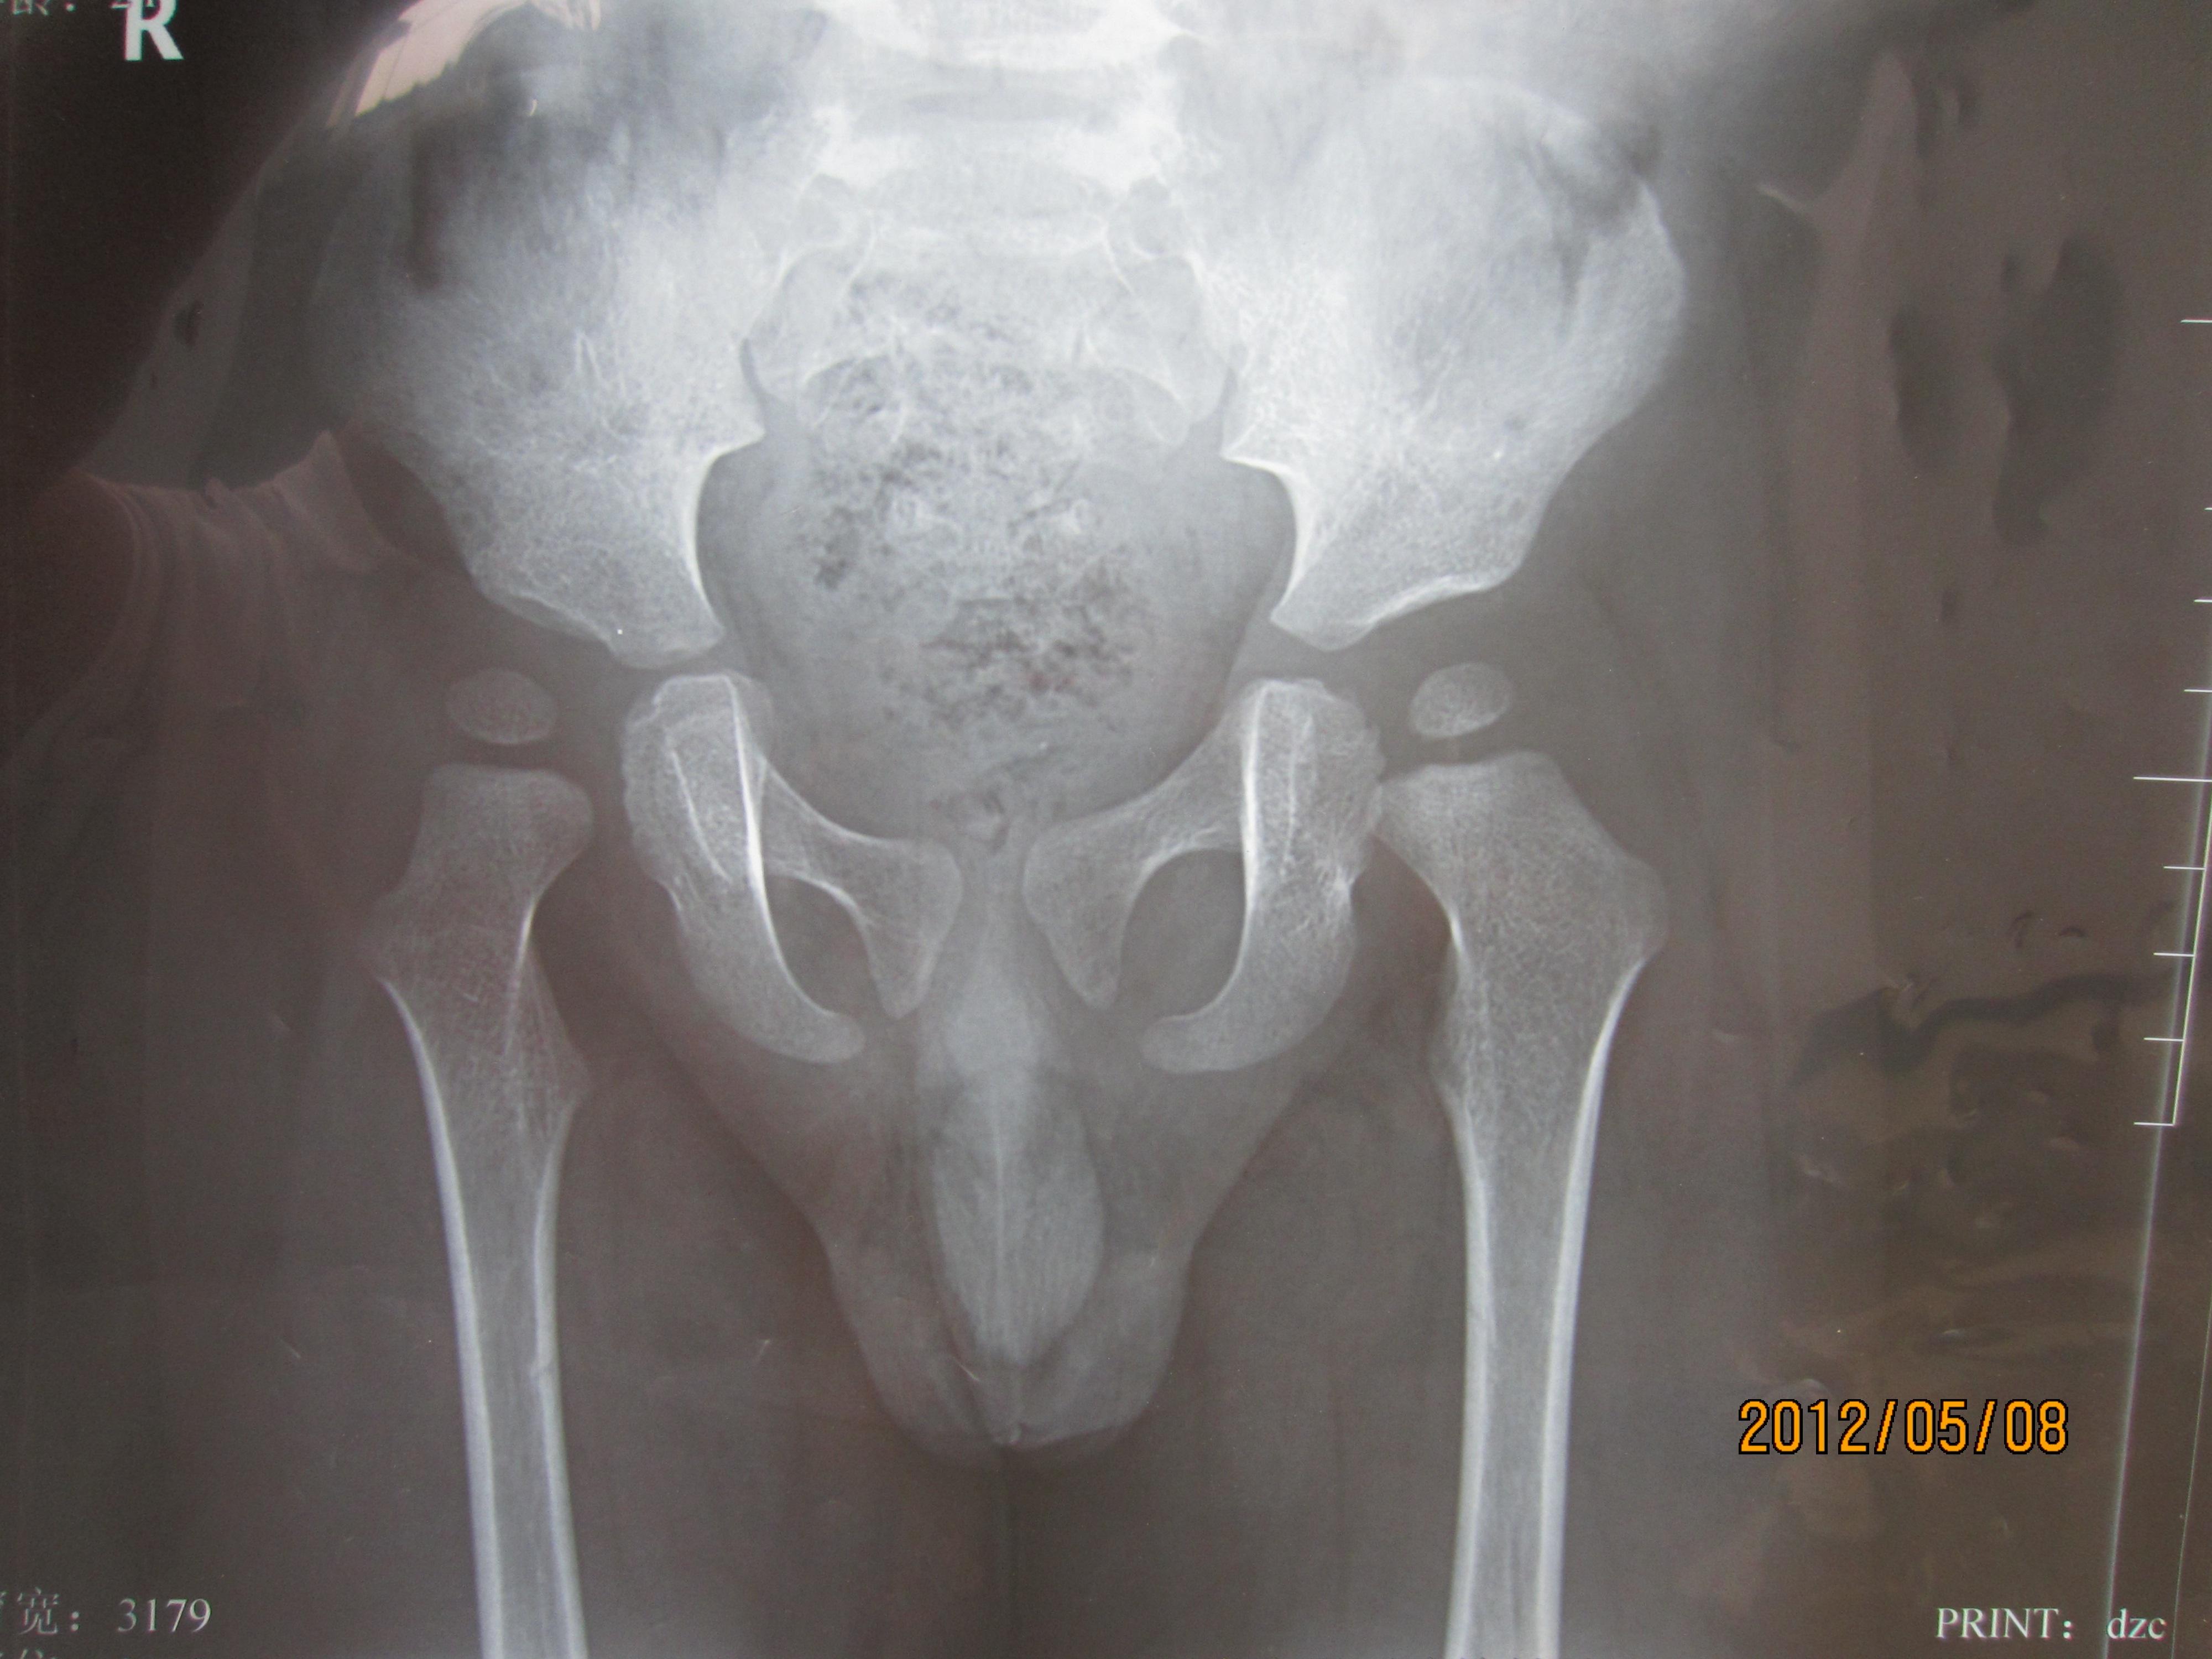 儿童骨盆x光图片